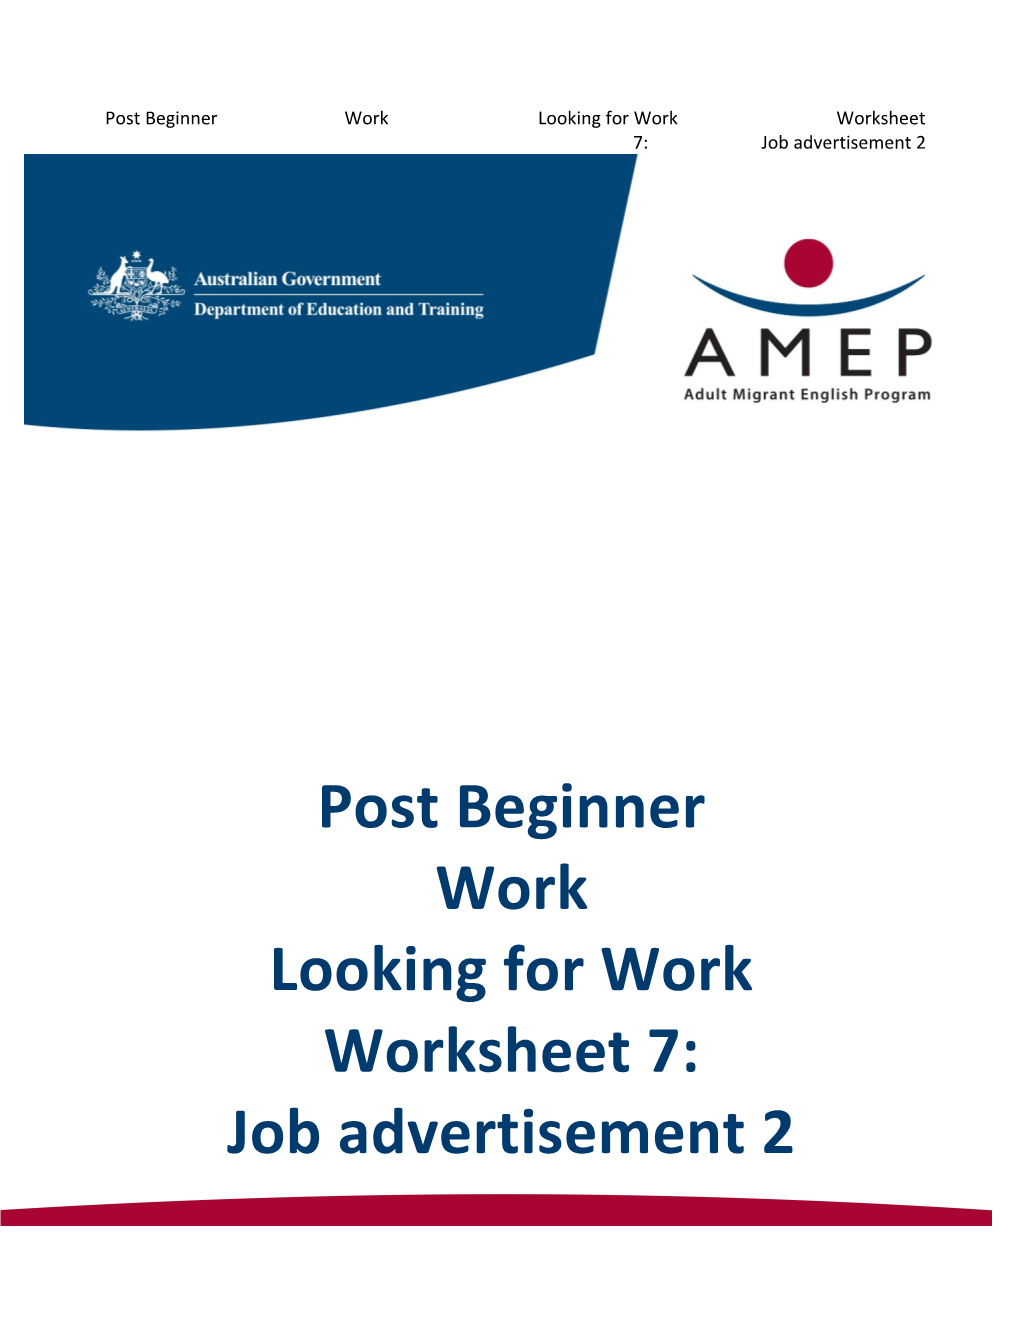 Post Beginner Work Looking for Work Worksheet 7: Job Advertisement 2